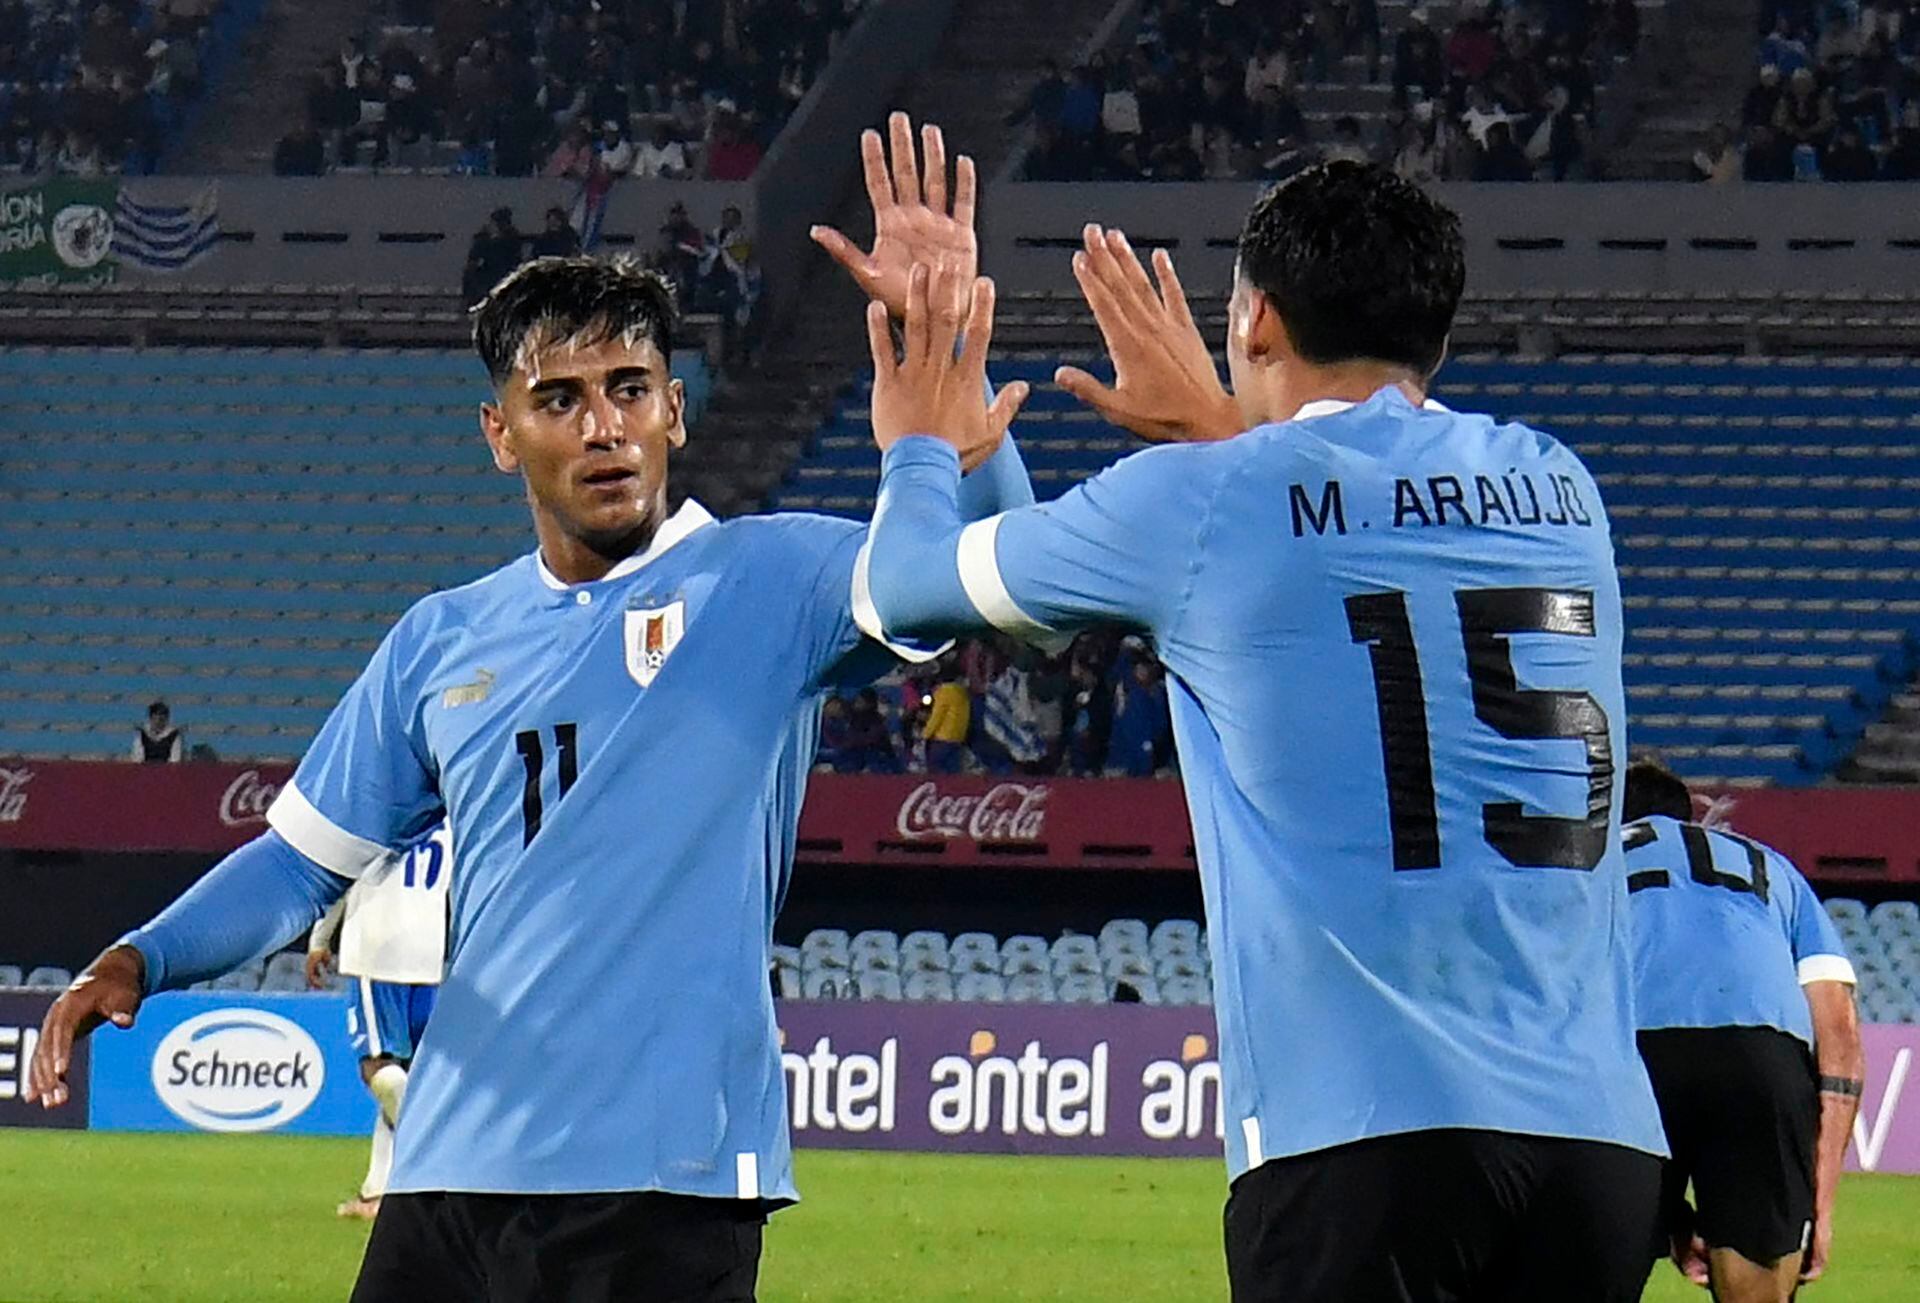 Uruguay derrotó a Cuba en el segundo partido de Bielsa y ya piensa